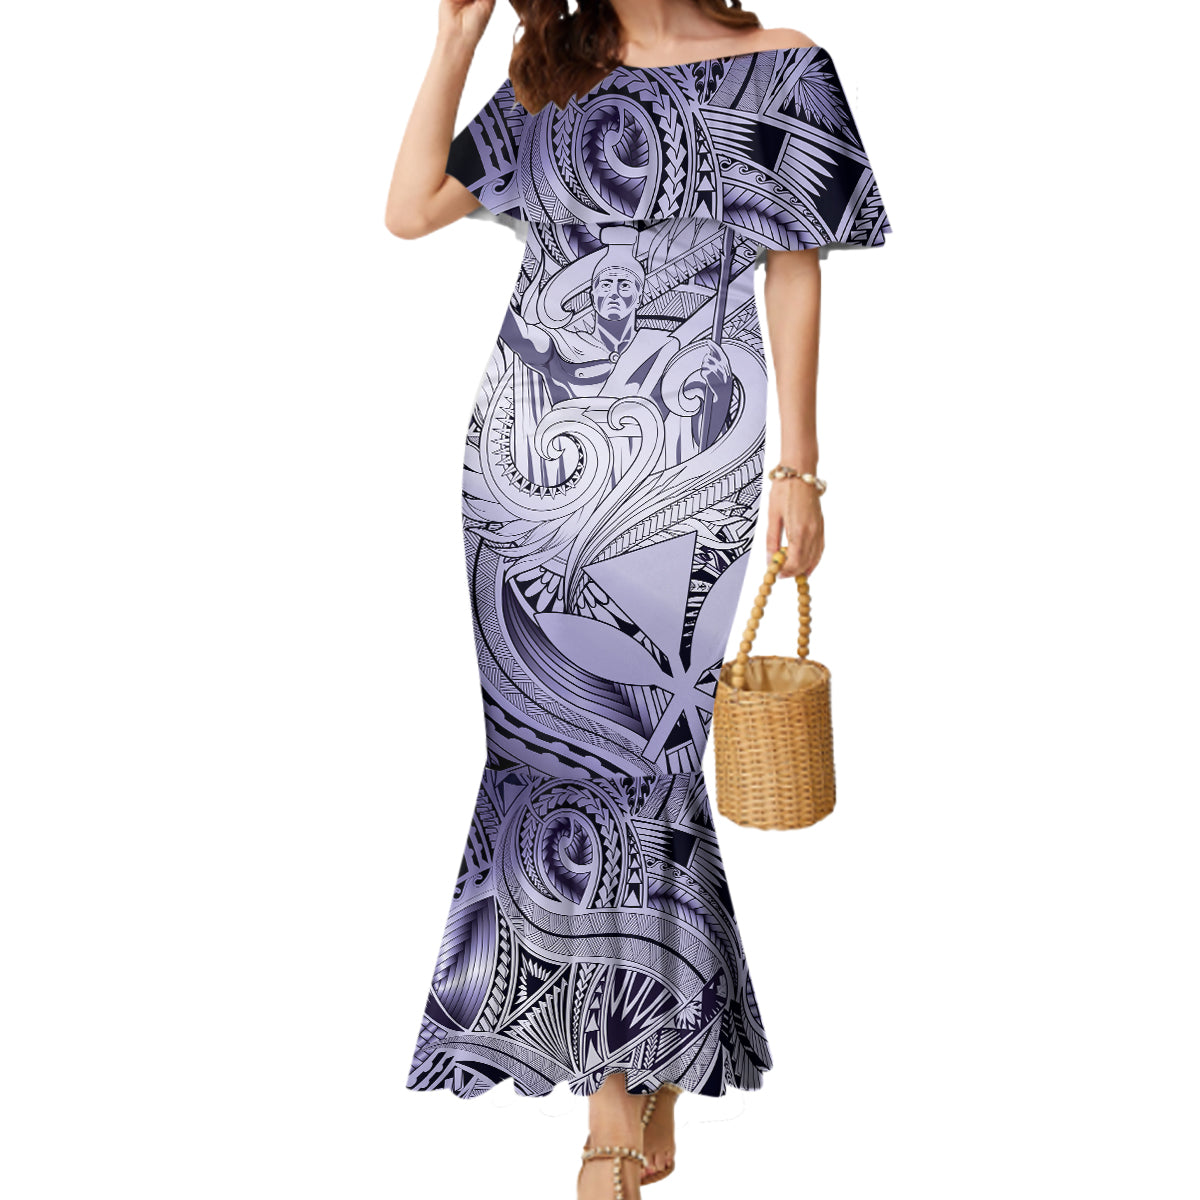 Personalised Aloha King Kamehameha Spirits Mermaid Dress Violet Special LT9 Women Violet - Polynesian Pride